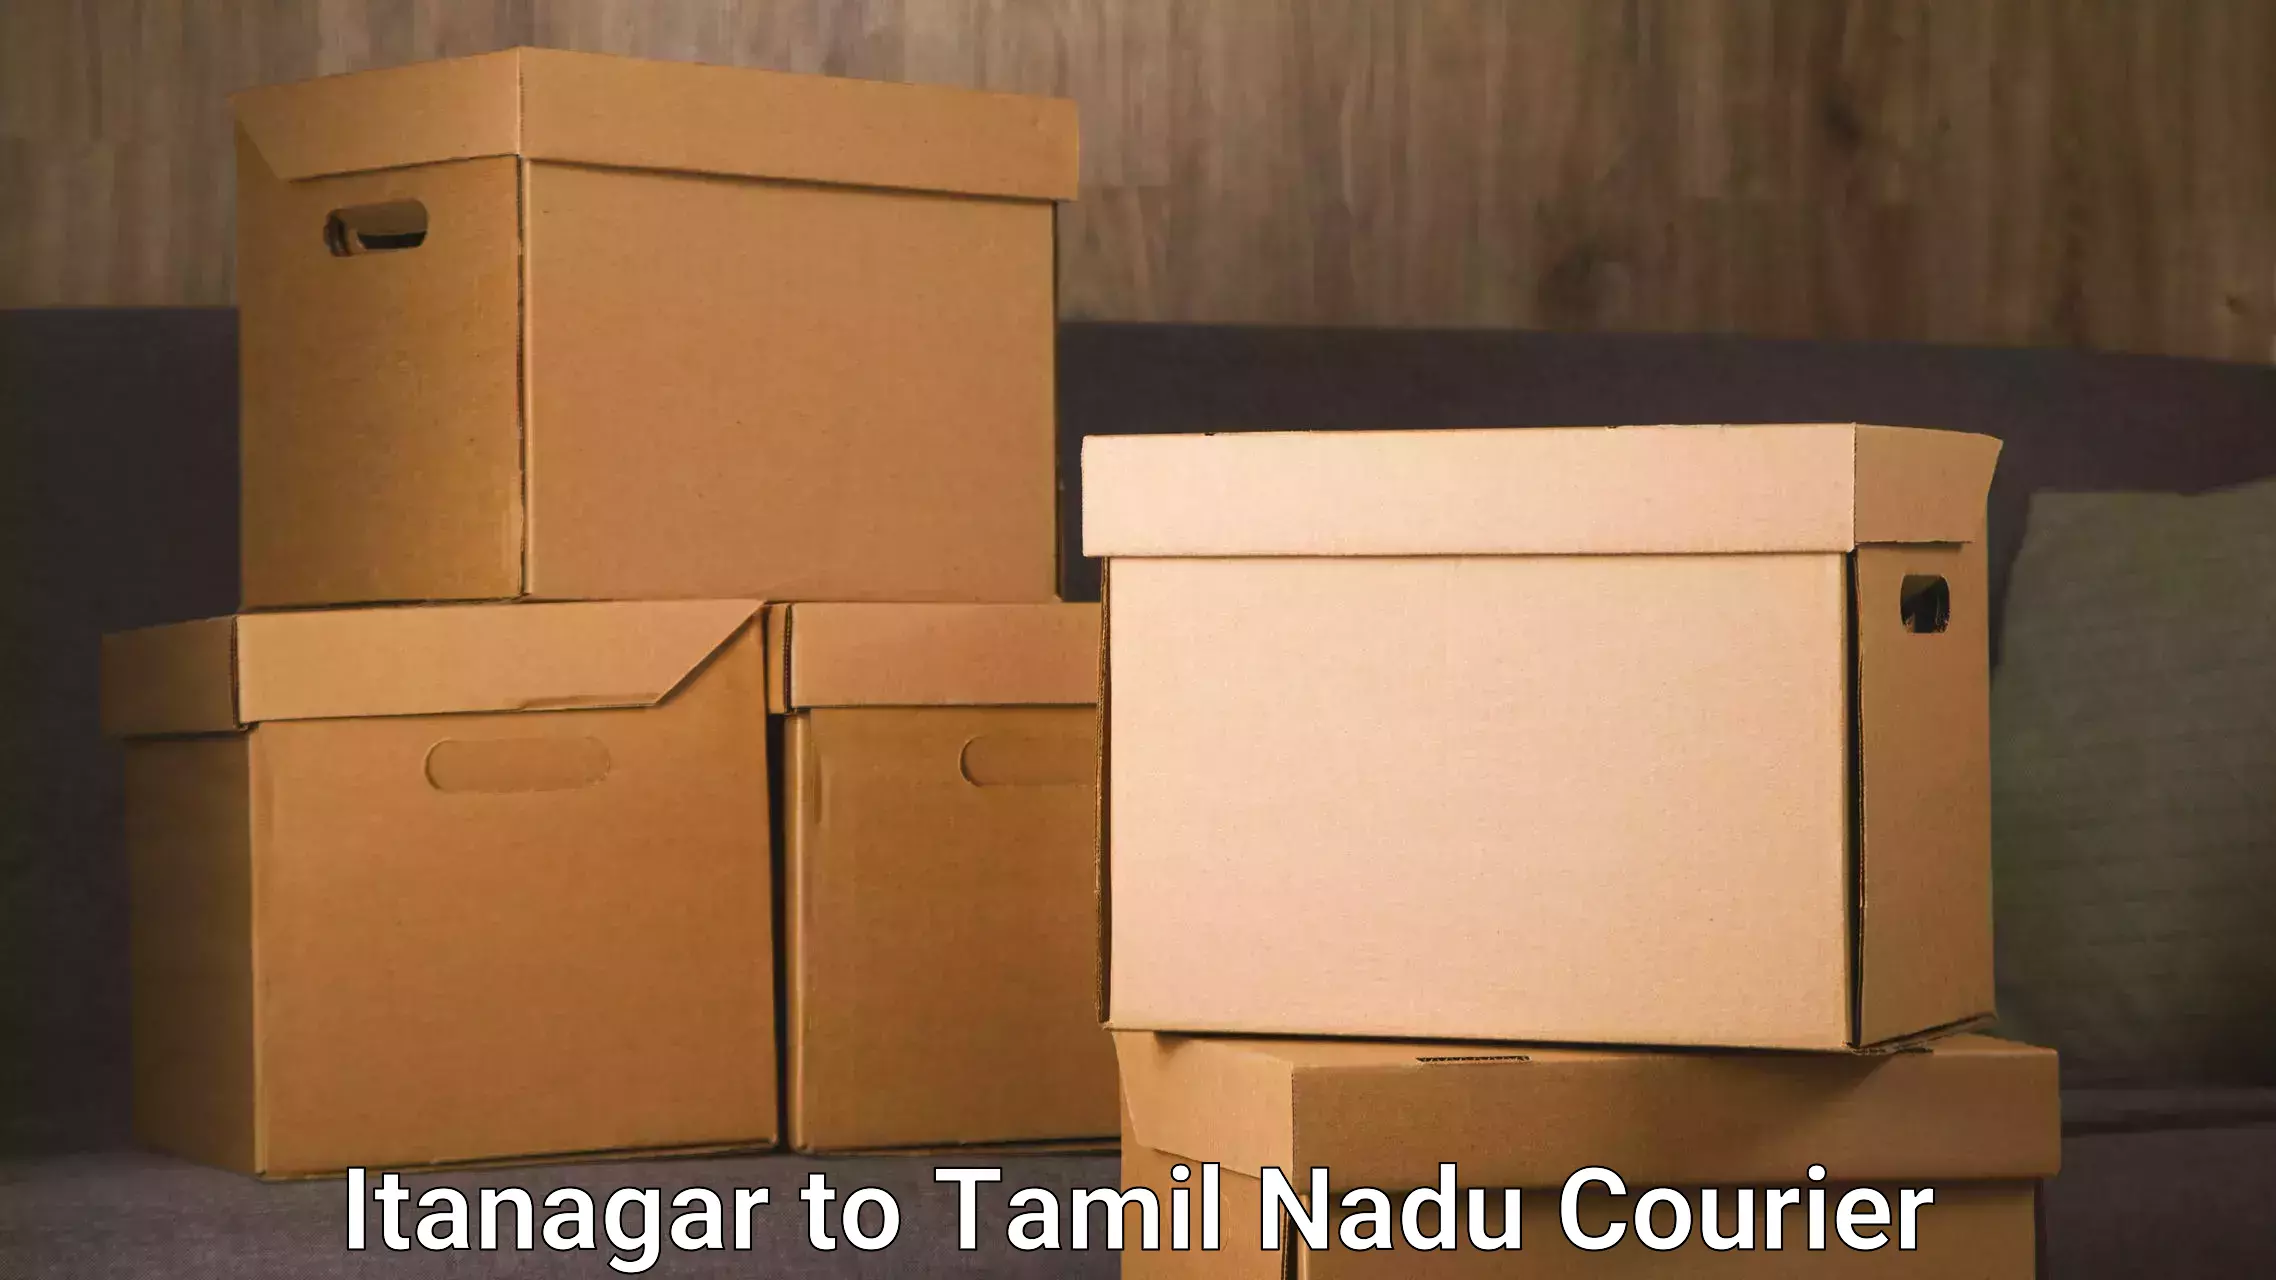 Reliable shipping solutions Itanagar to Nilgiris